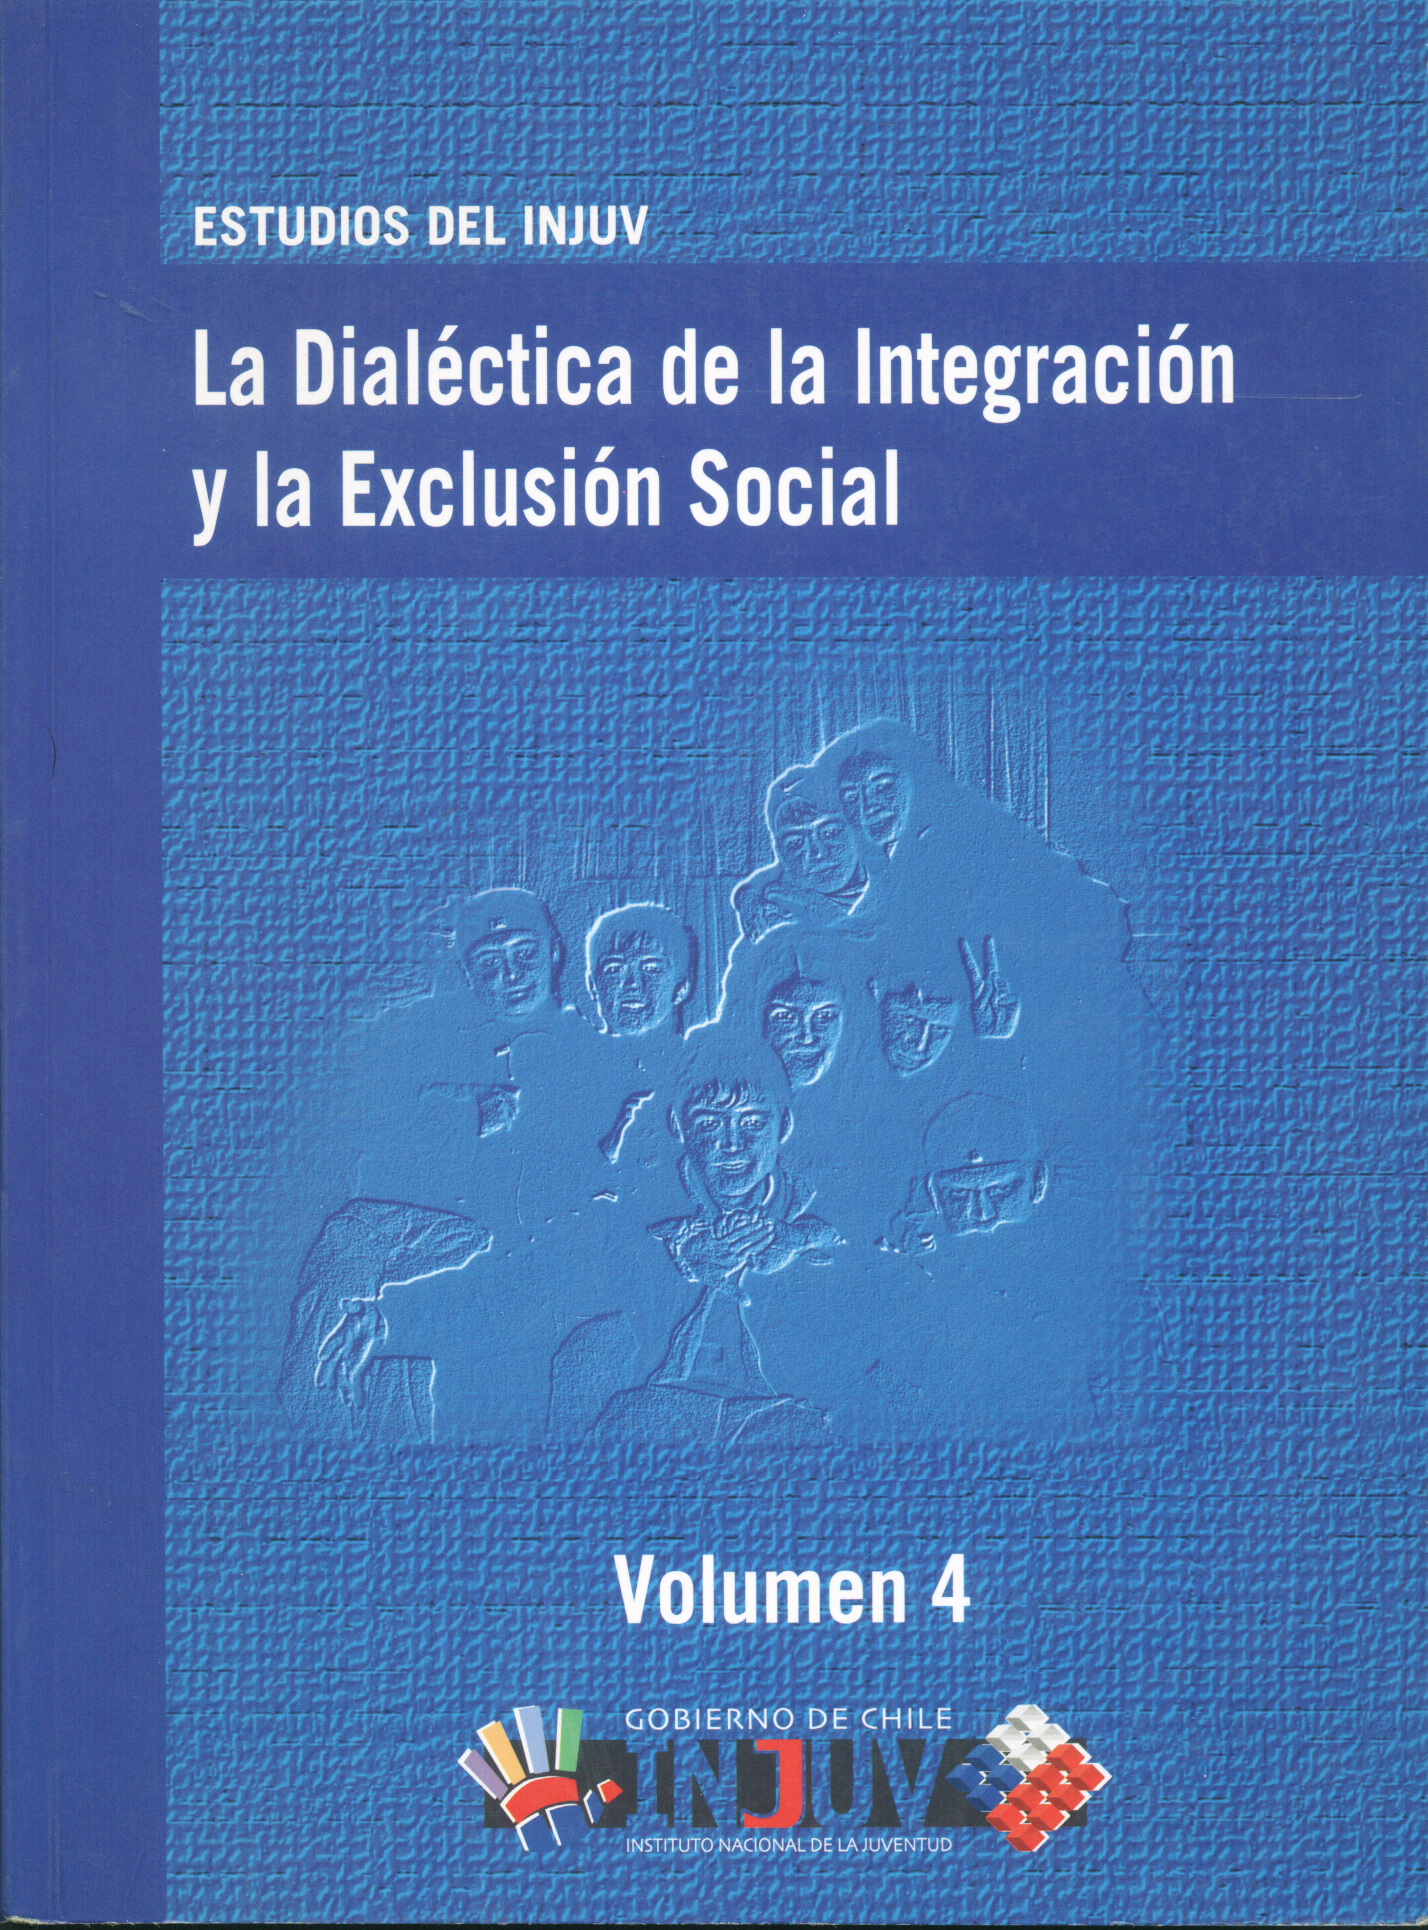 La dialéctica de la integración y la exclusión social